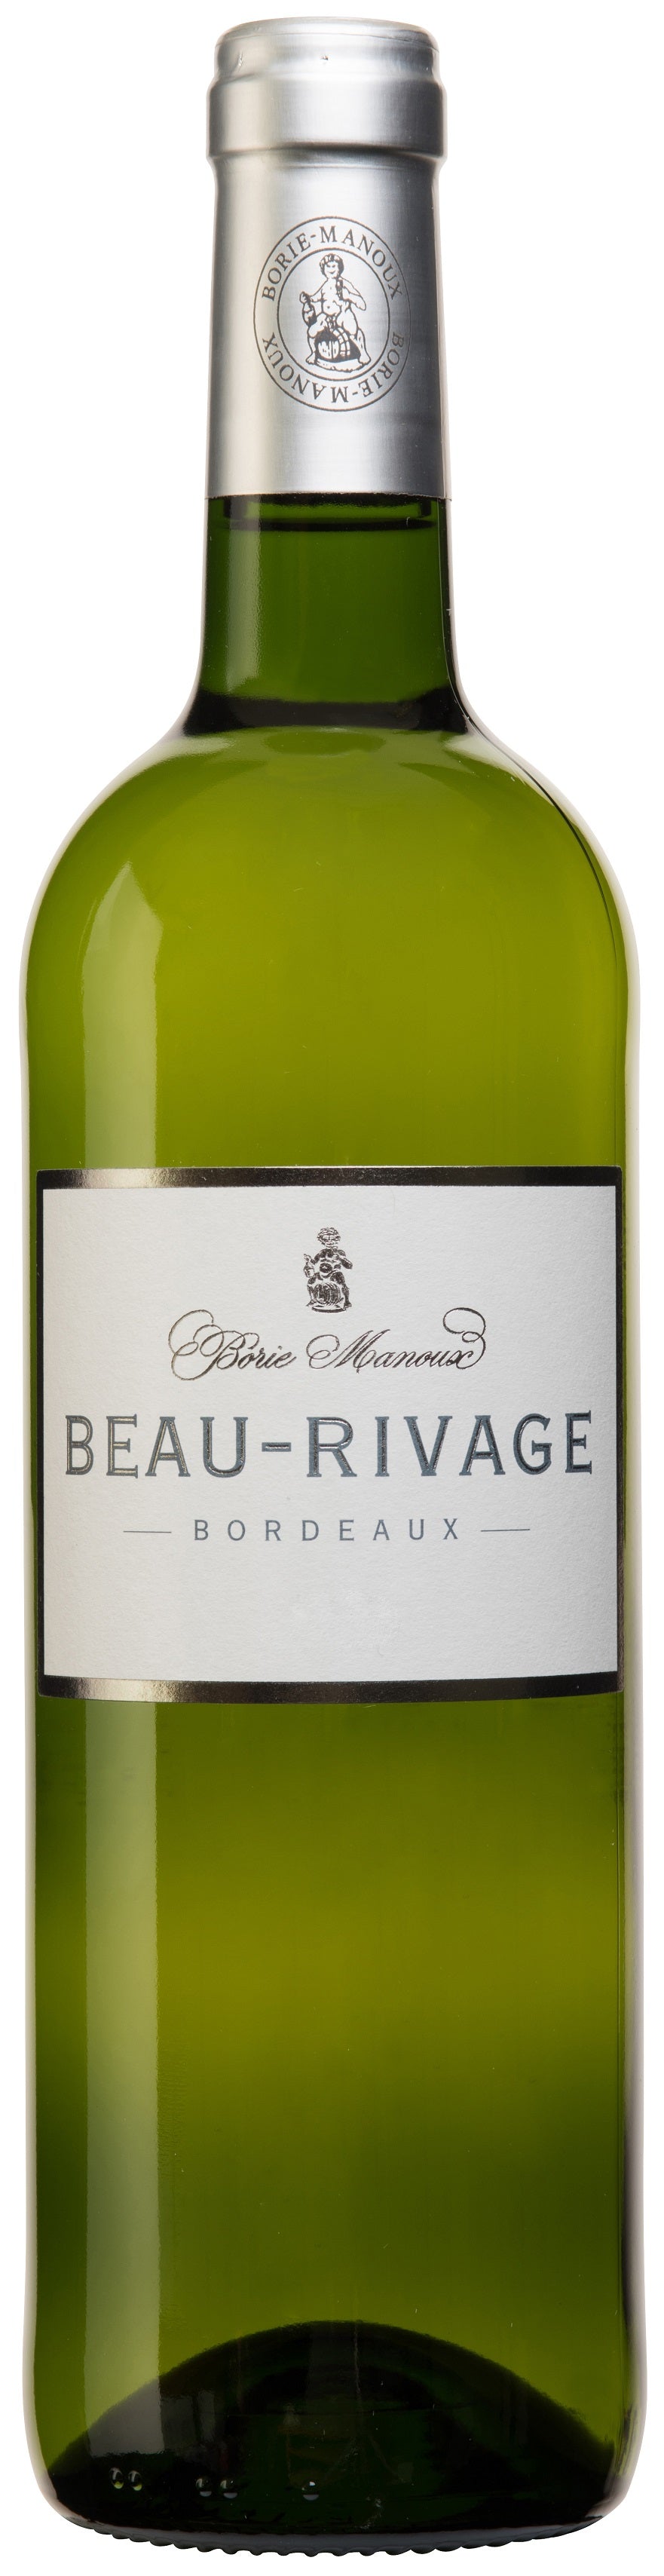 Beau-Rivage Bordeaux 2018